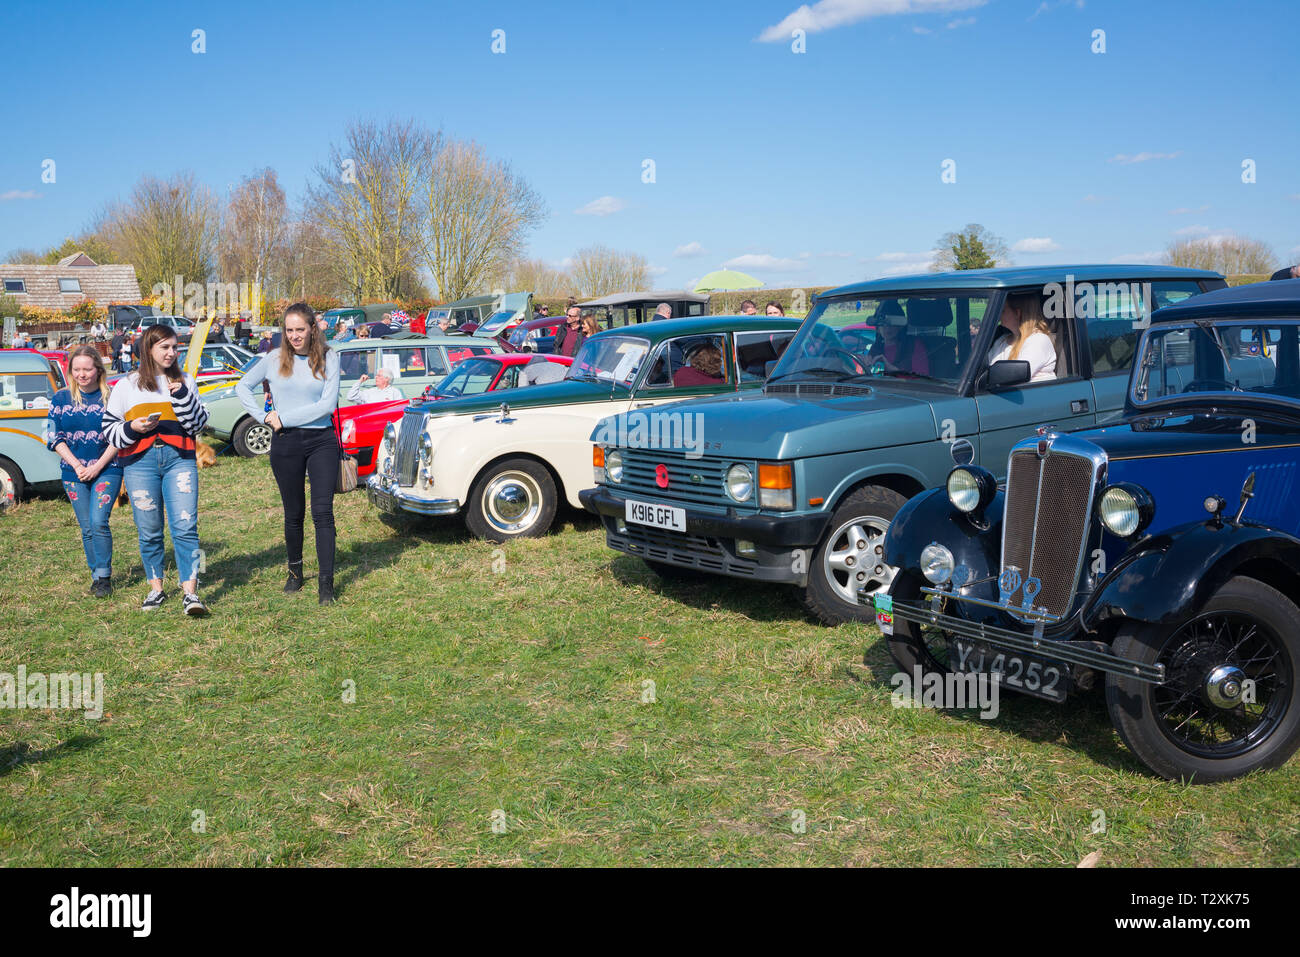 Thriplow, Cambridge, England, UK - März 2019: Klassische alte Auto Oldtimer Show Exhibition in einem offenen Bereich im Freien mit Leute zu beobachten die Fahrzeuge Stockfoto